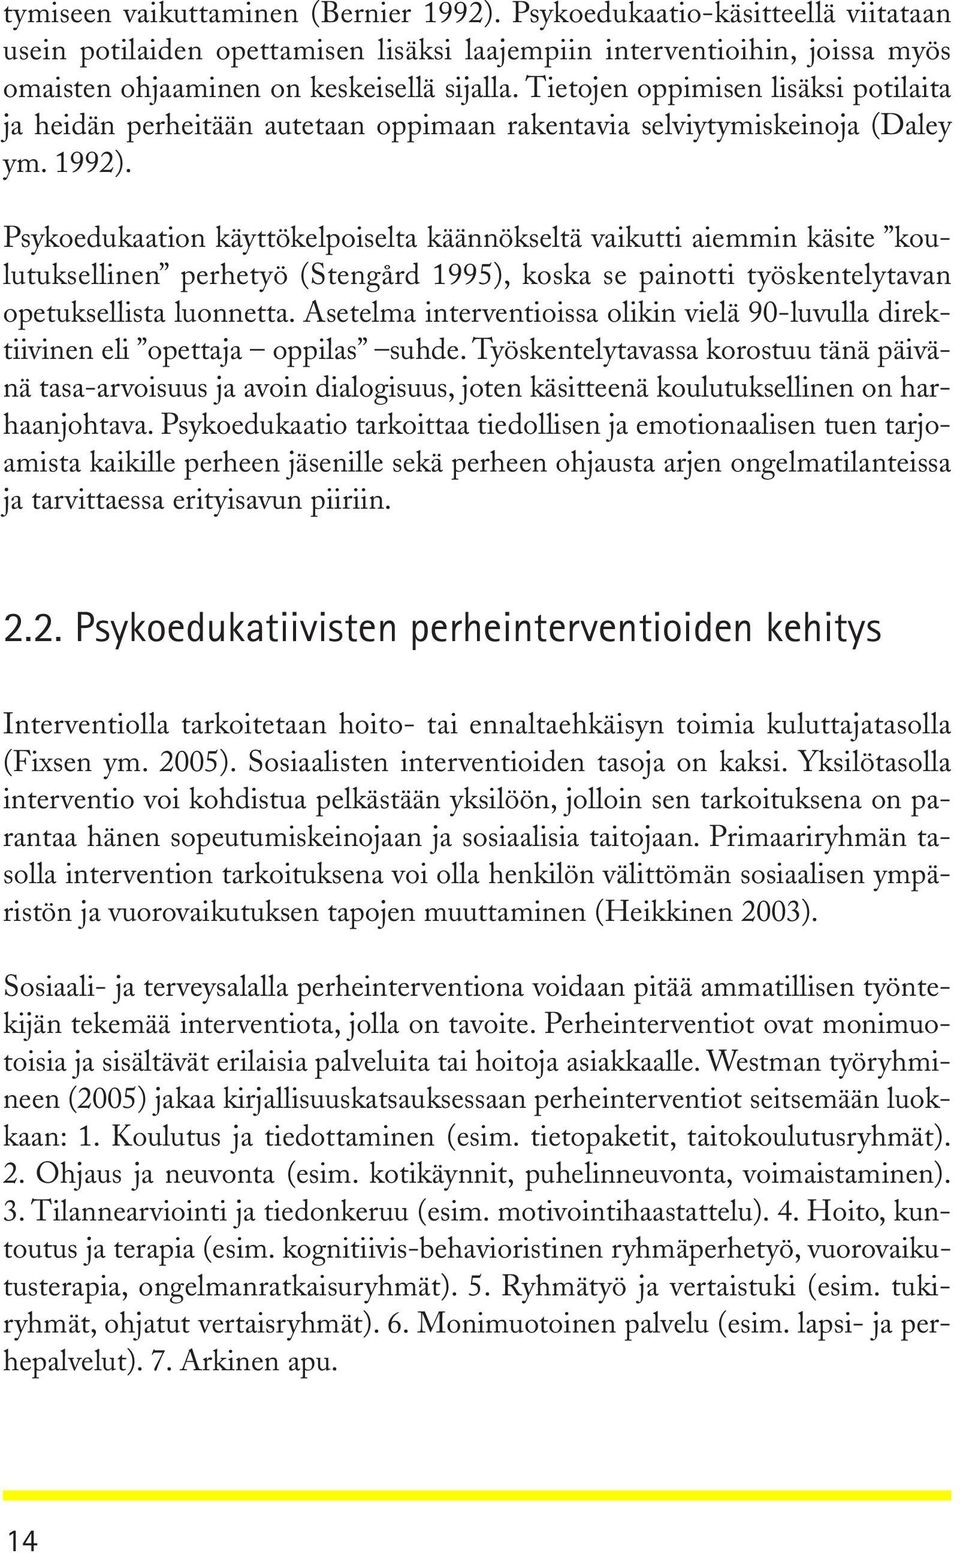 Psykoedukaation käyttökelpoiselta käännökseltä vaikutti aiemmin käsite koulutuksellinen perhetyö (Stengård 1995), koska se painotti työskentelytavan opetuksellista luonnetta.